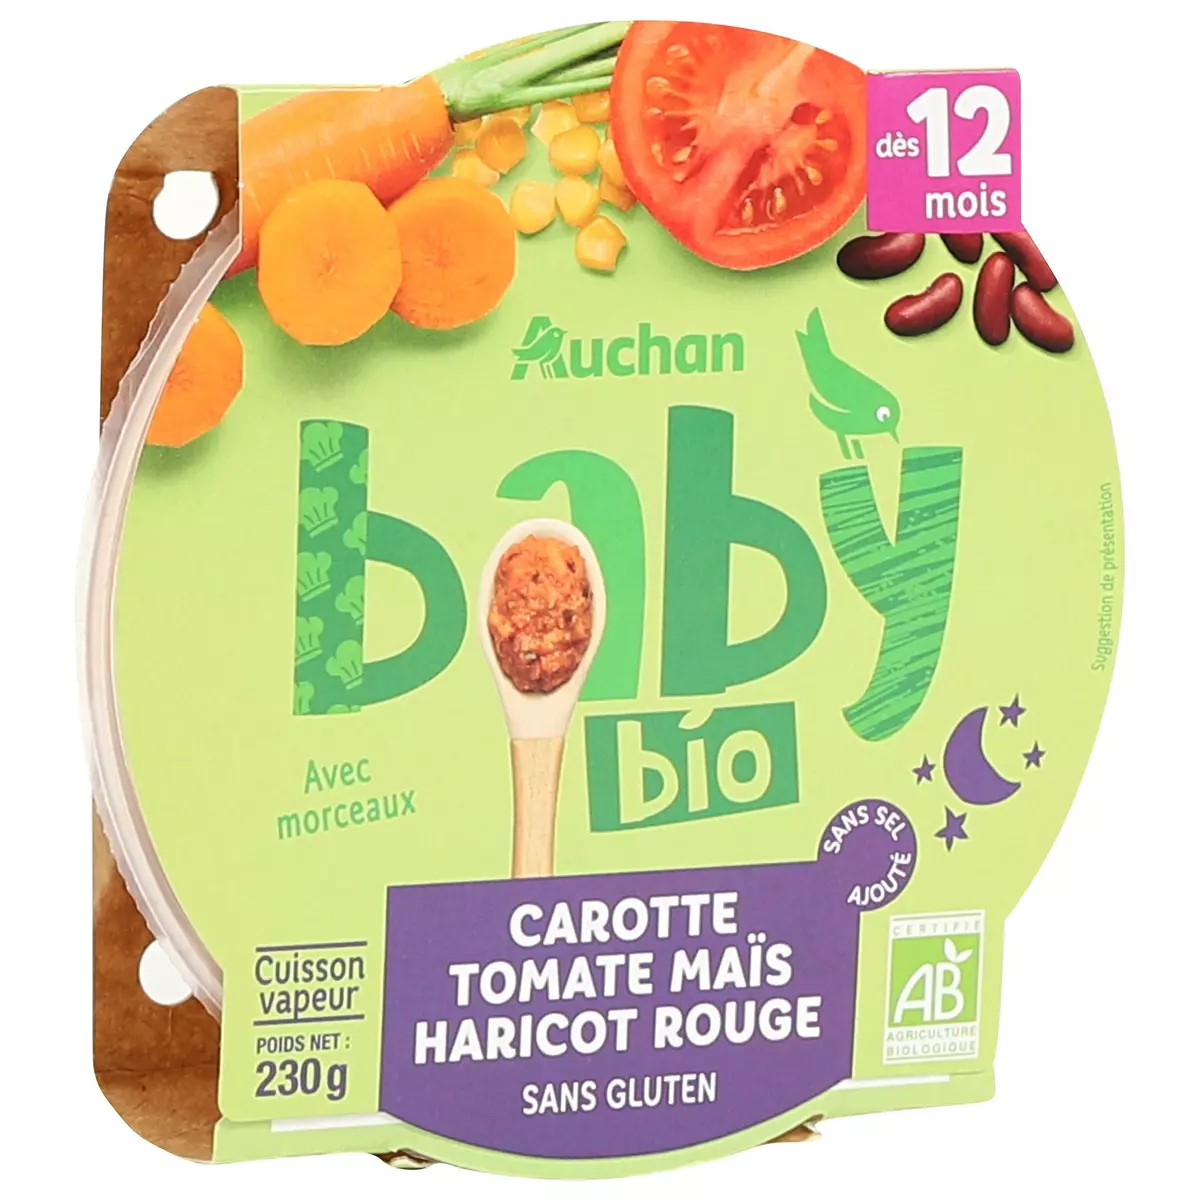 AUCHAN BABY BIO Assiette de carotte tomate maïs et haricot rouge sans gluten dès 12 mois 230g